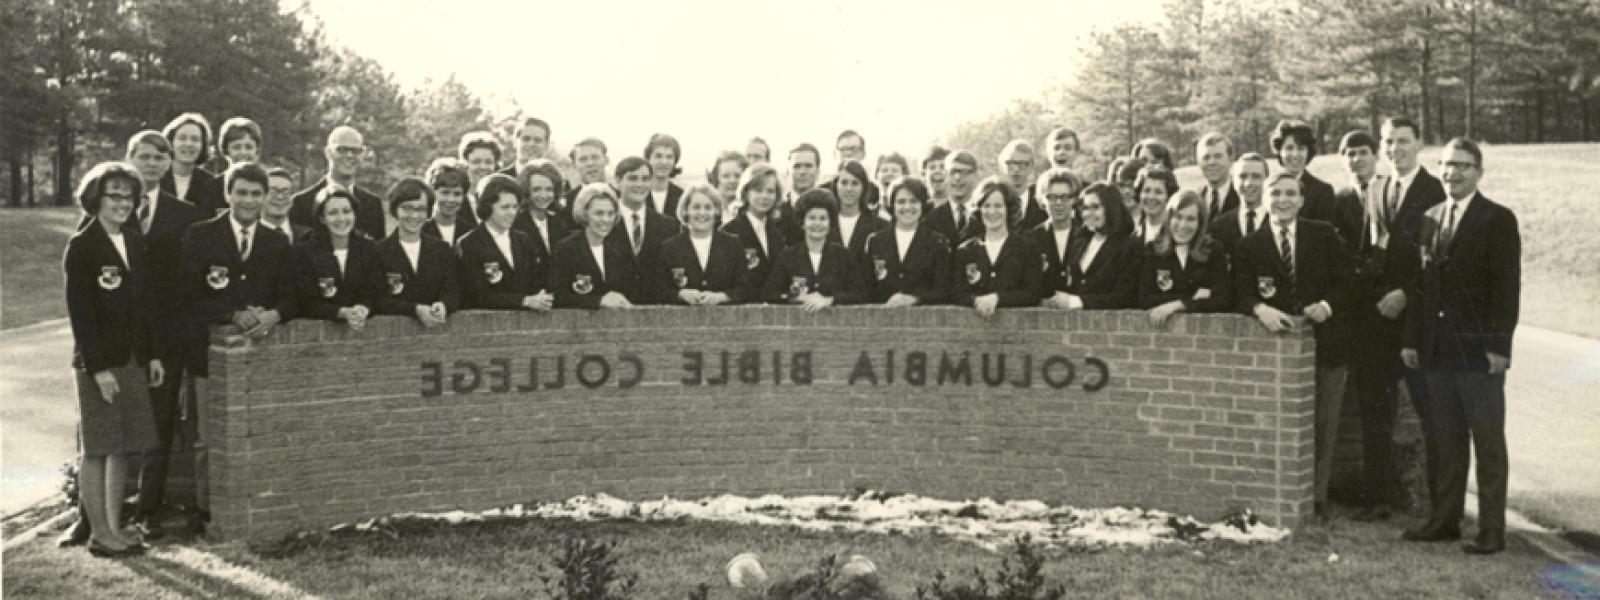 哥伦比亚圣经学院大使唱诗班，1960年代末